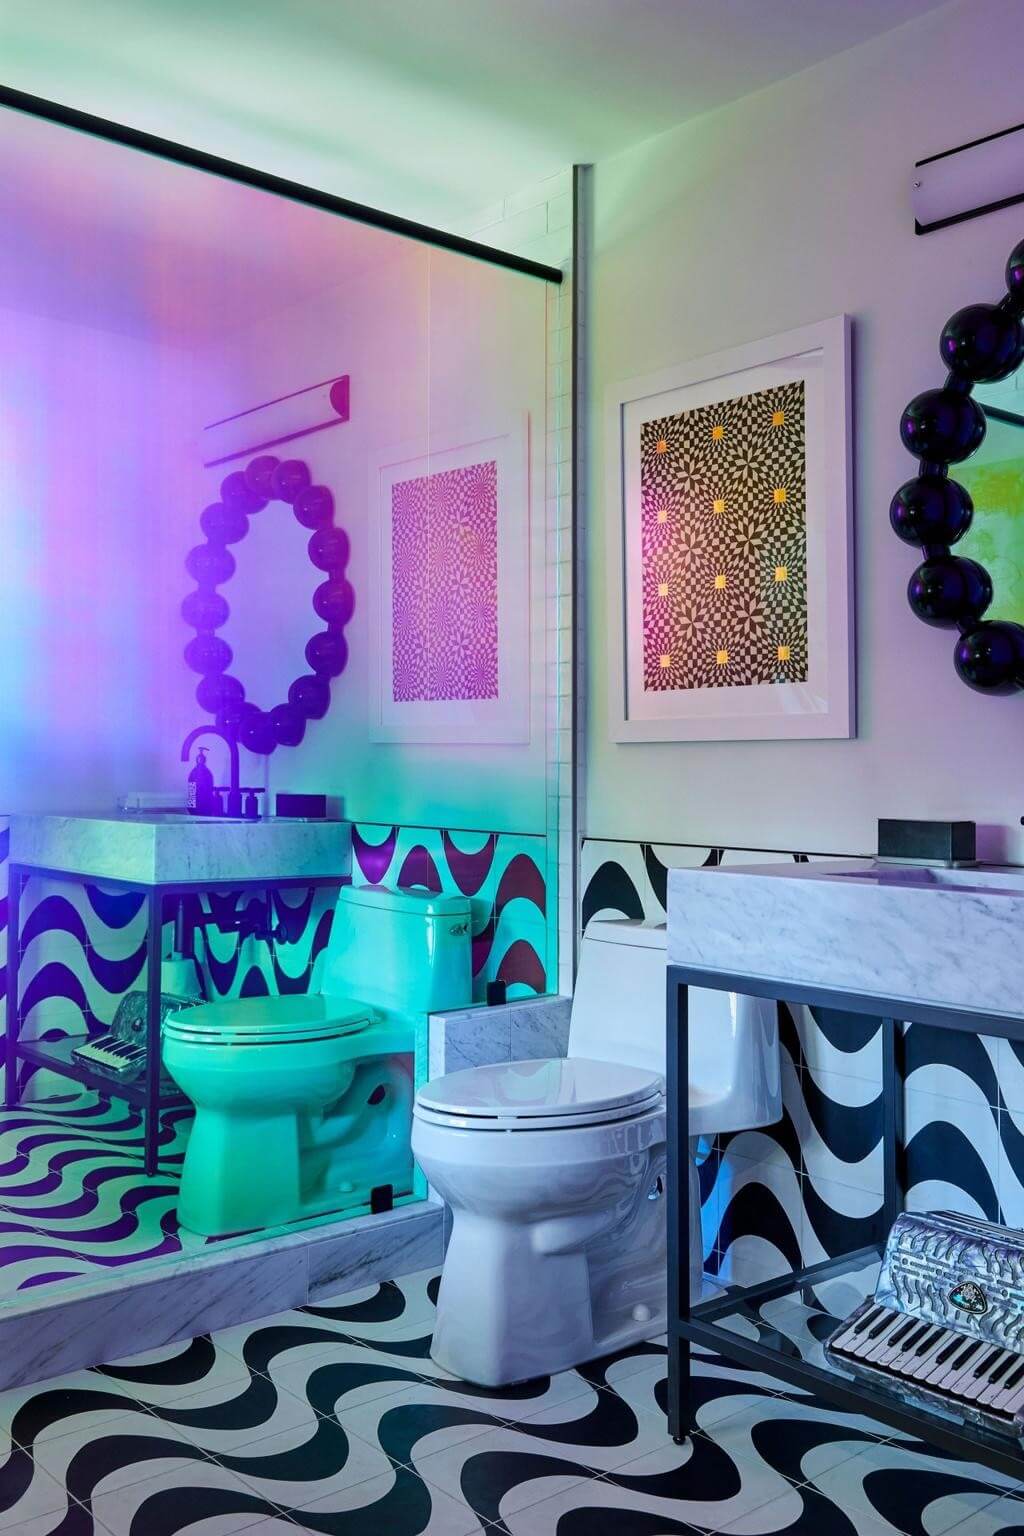 LA Home - Bathroom Inspiration - Inside The Best Celebrity Homes